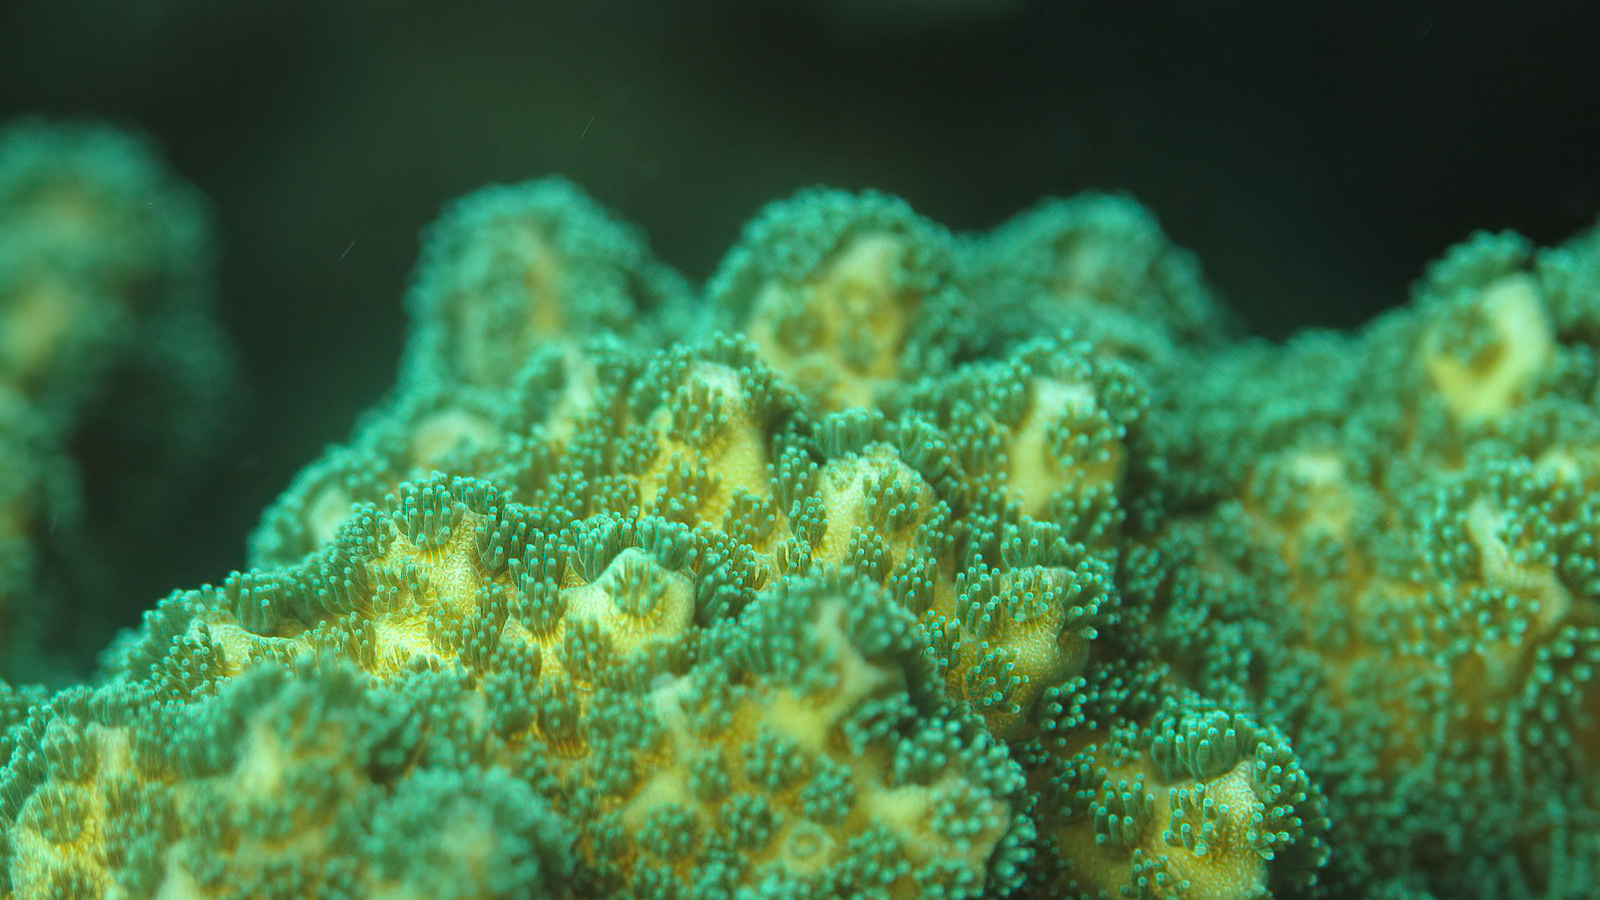 Primer plano de un coral Pocillopora del Pacífico oriental tropical. Fotografía: Ana Palacio-Castro.